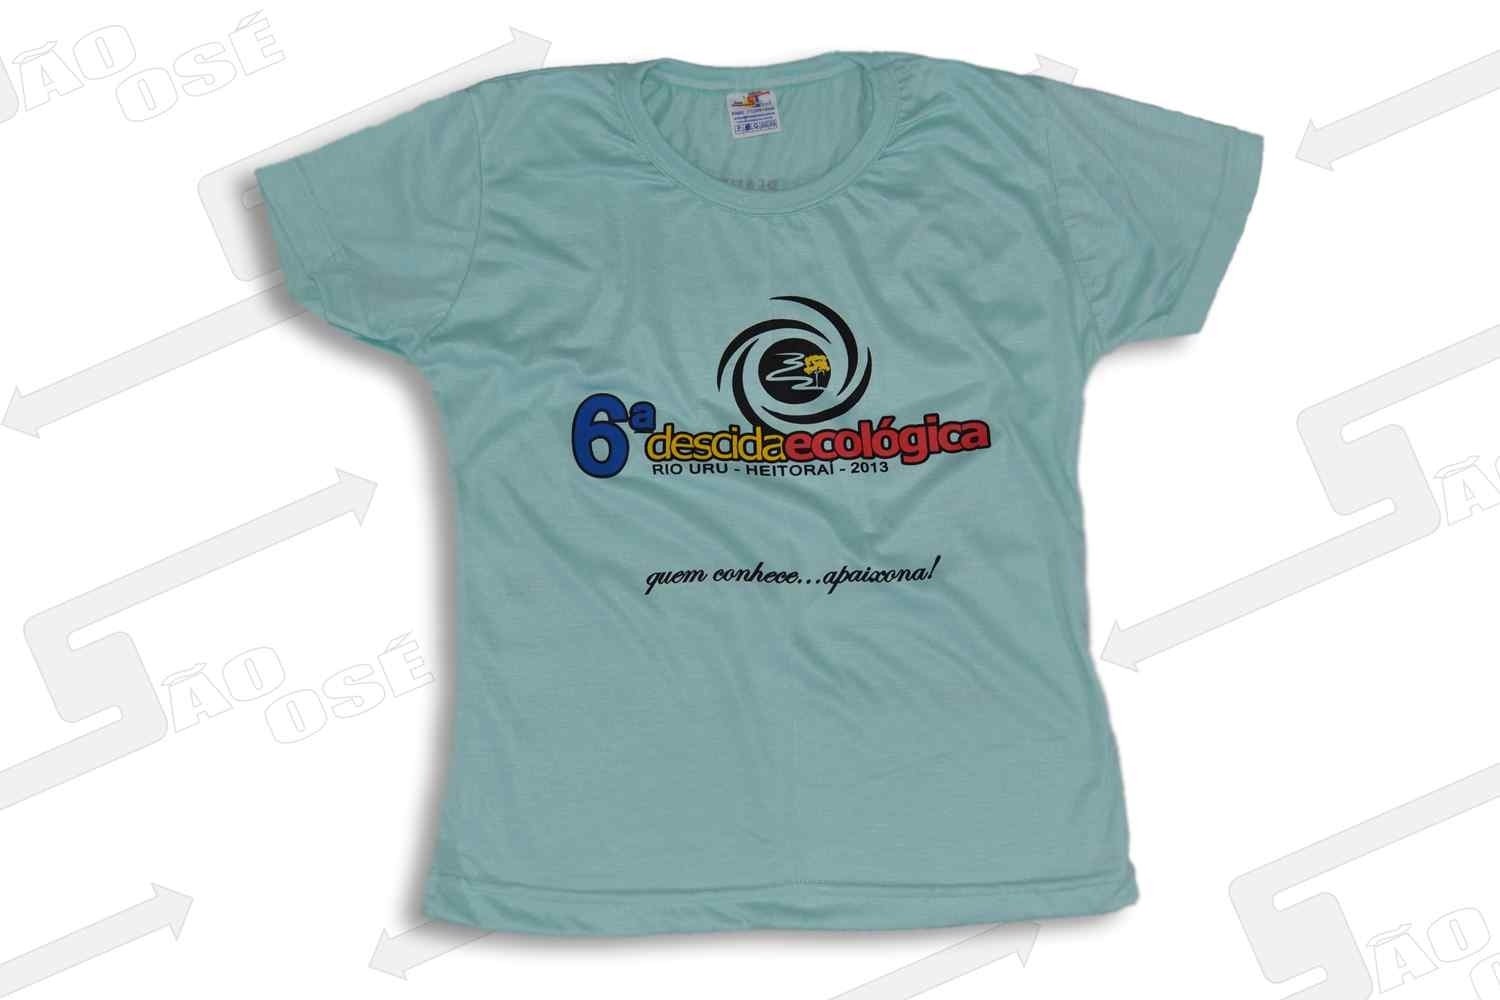 Camisetas Promocionais em Silkscreen